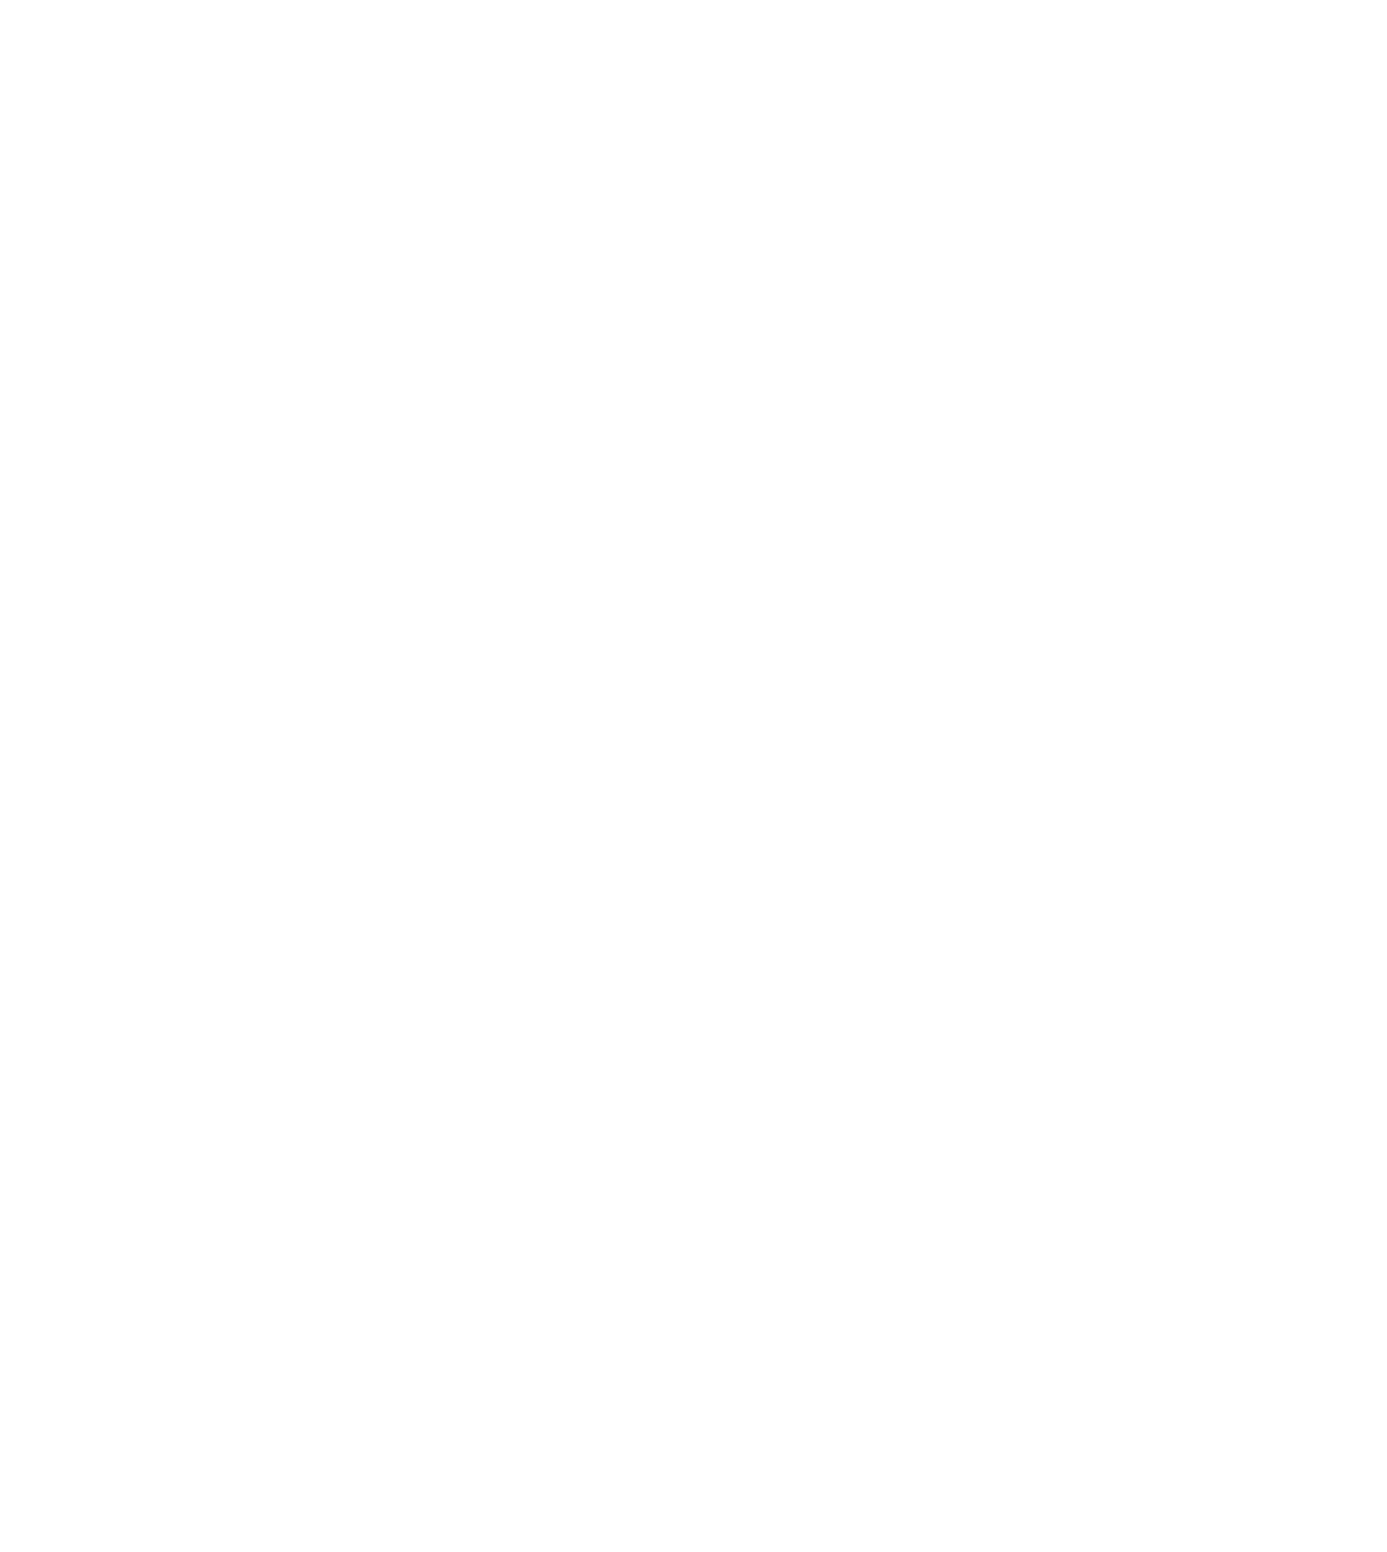 Haier Smart Home logo for dark backgrounds (transparent PNG)